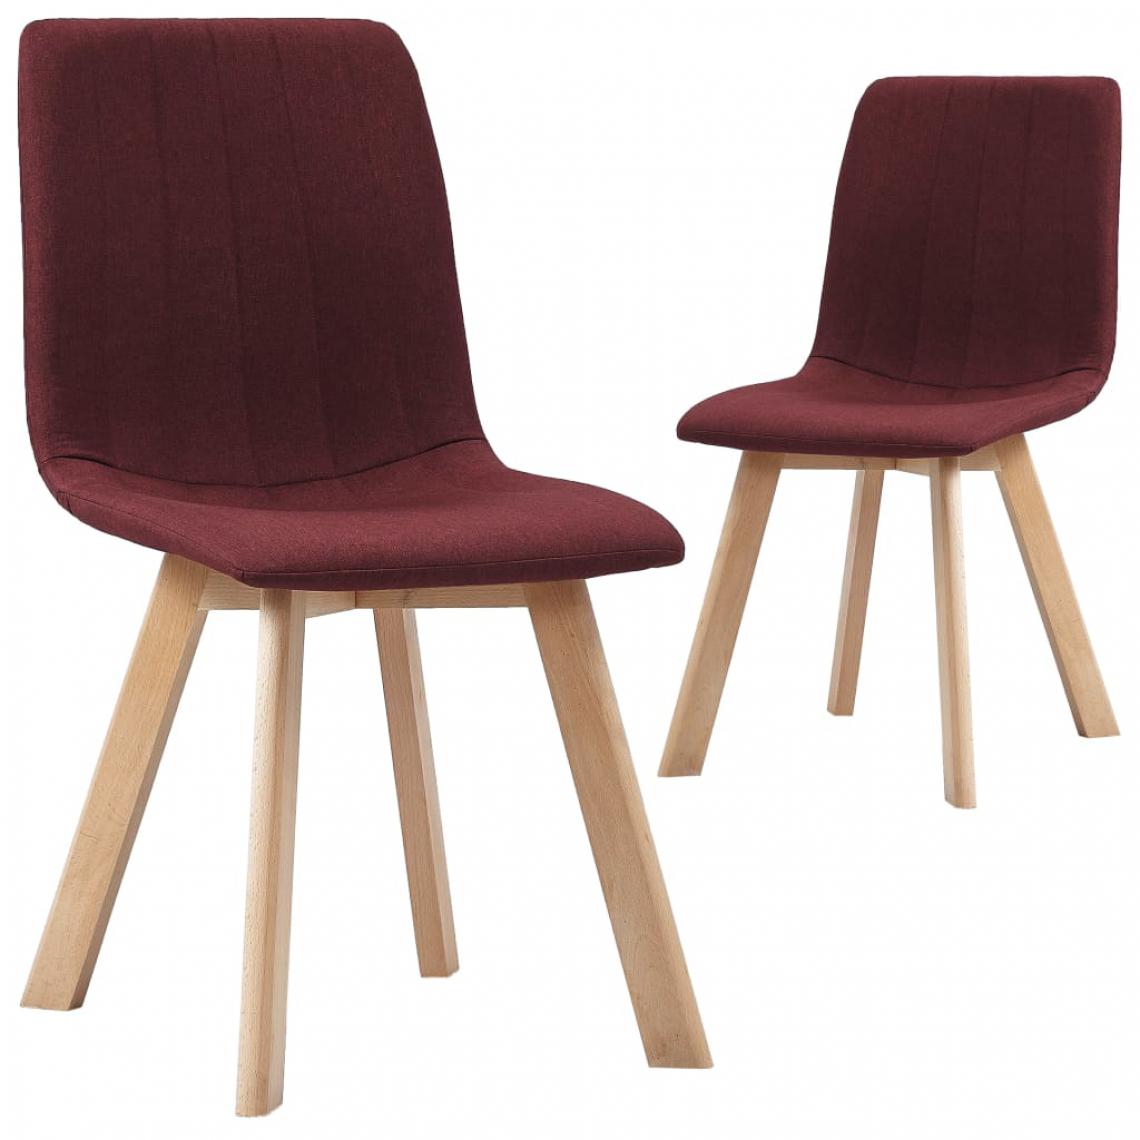 Icaverne - Esthetique Fauteuils et chaises collection Paramaribo Chaises de salle à manger 2 pcs Rouge bordeaux Tissu - Chaises